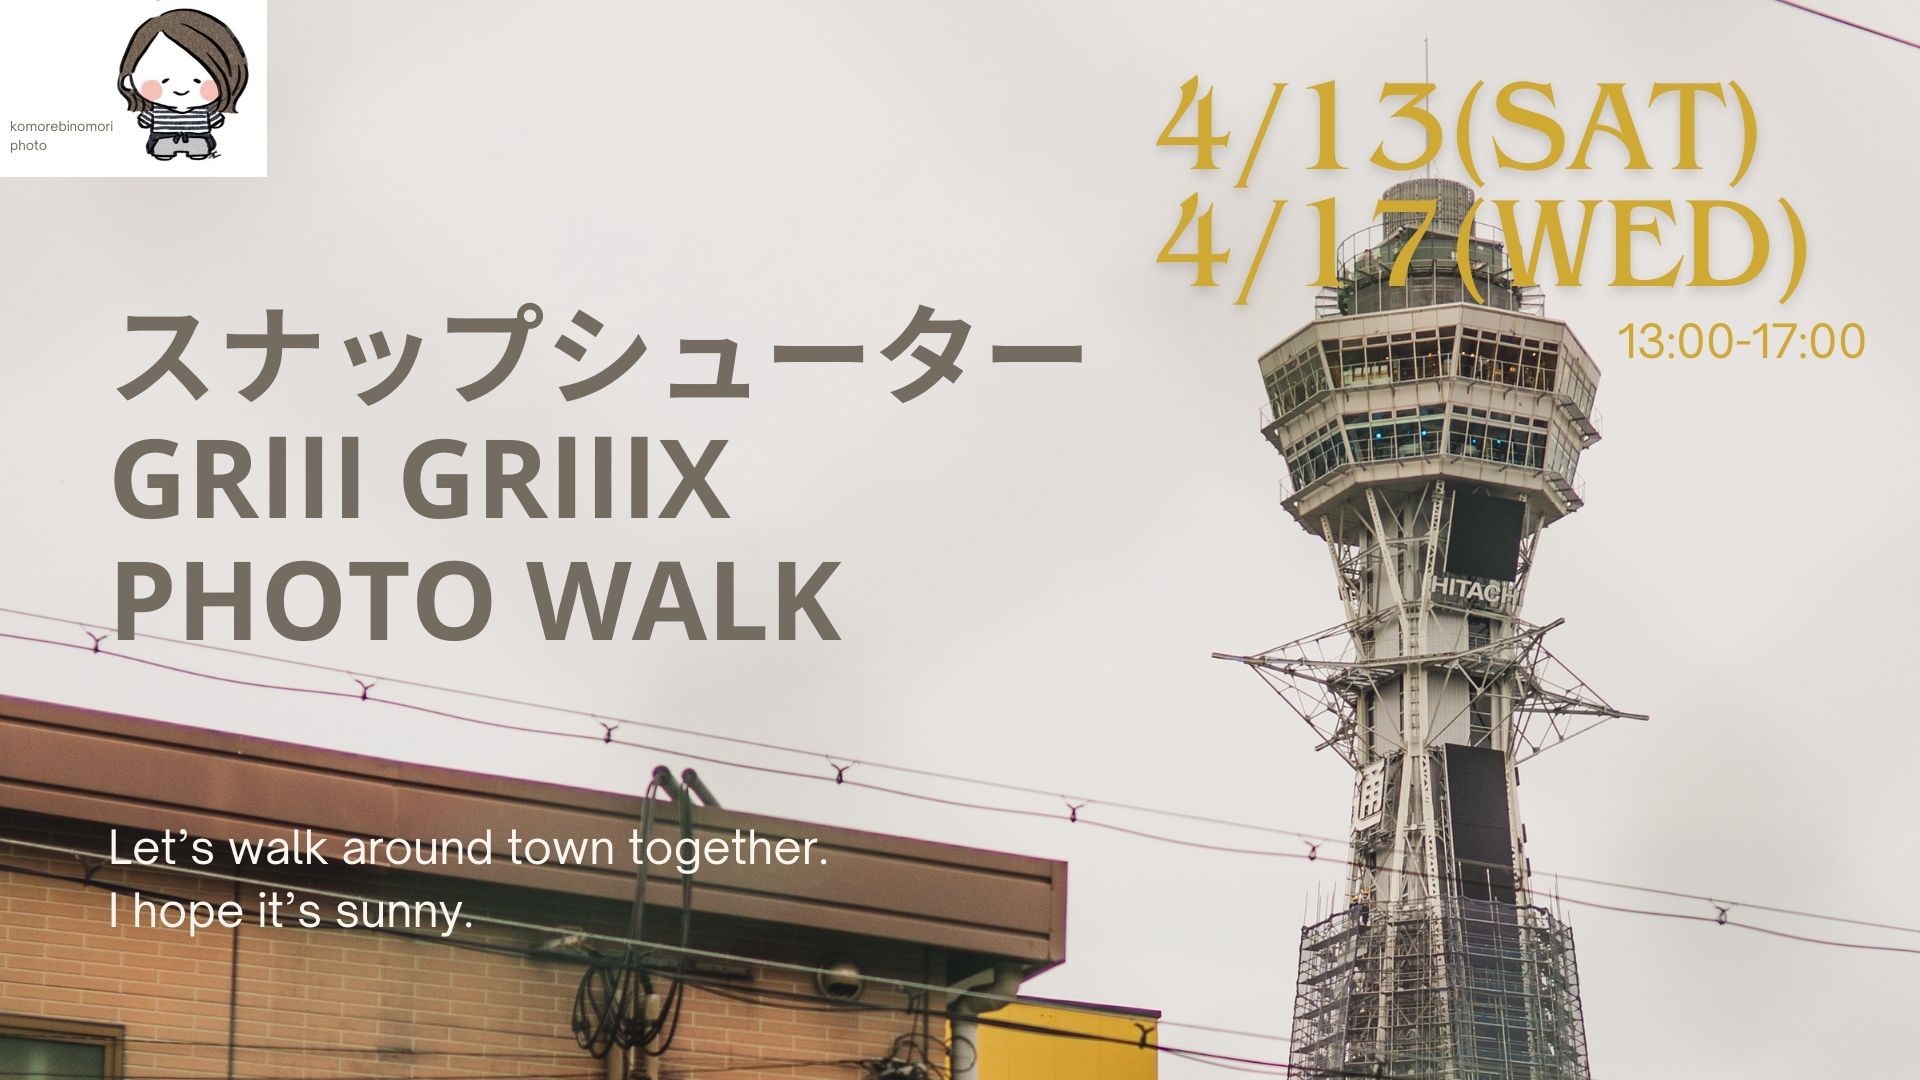 ◆スナップシューター GRⅢ、GRⅢX 大阪PHOTO WALK   4/13(土)&4/17(水)13:00-17:00 (両日開講決定！)